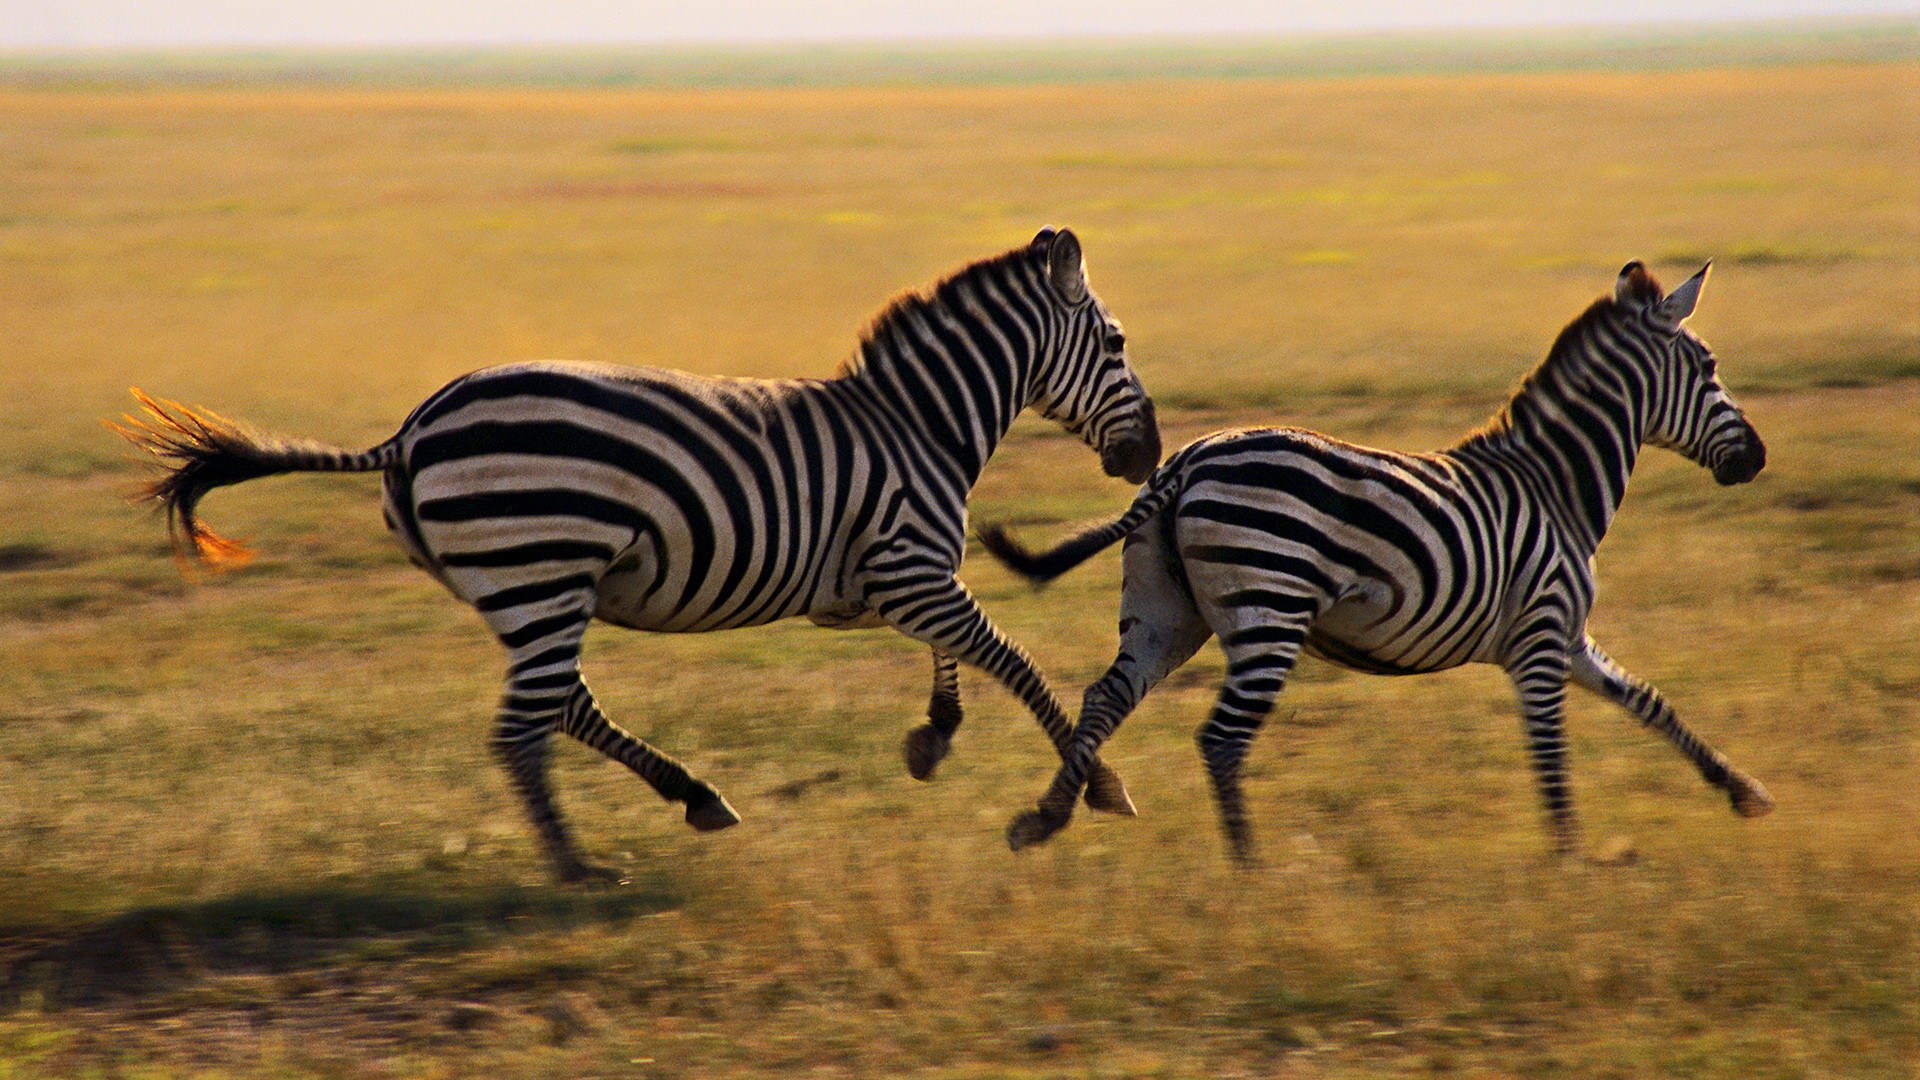 Zebras vóór een onweersbui, Tanzania, Serengeti-Park